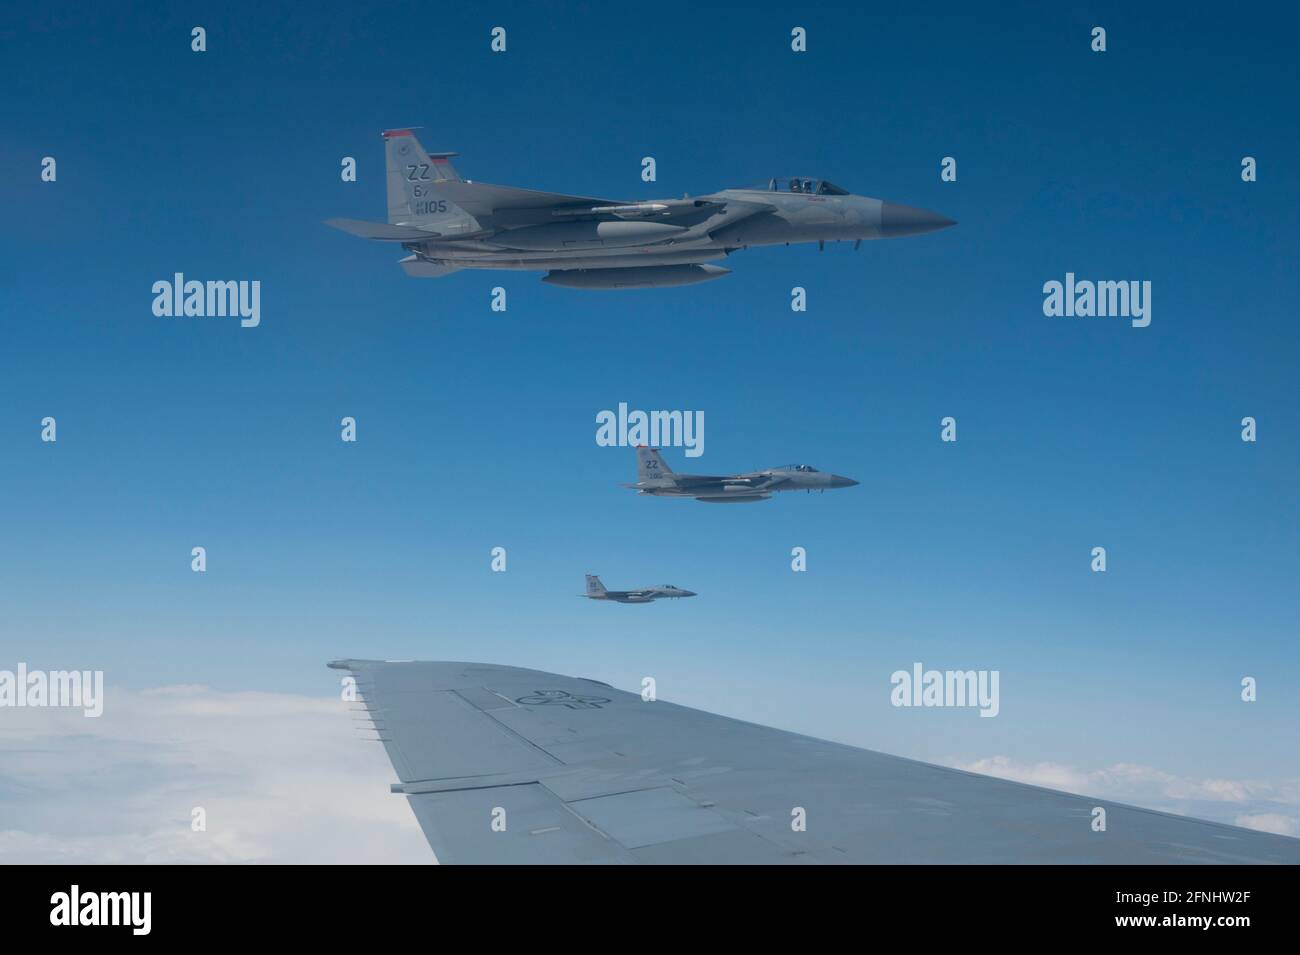 Die US Air Force F-15C Eagle-Kampfflugzeuge, die dem 67. Jagdgeschwader zugewiesen wurden, fliegen neben einem Air Force KC-10 Extender, nachdem sie während der Übung Northern Edge 21 über dem Joint Pacific Alaska Range Complex am 13. Mai 2021 im Golf von Alaska aufgetankt wurden. Stockfoto